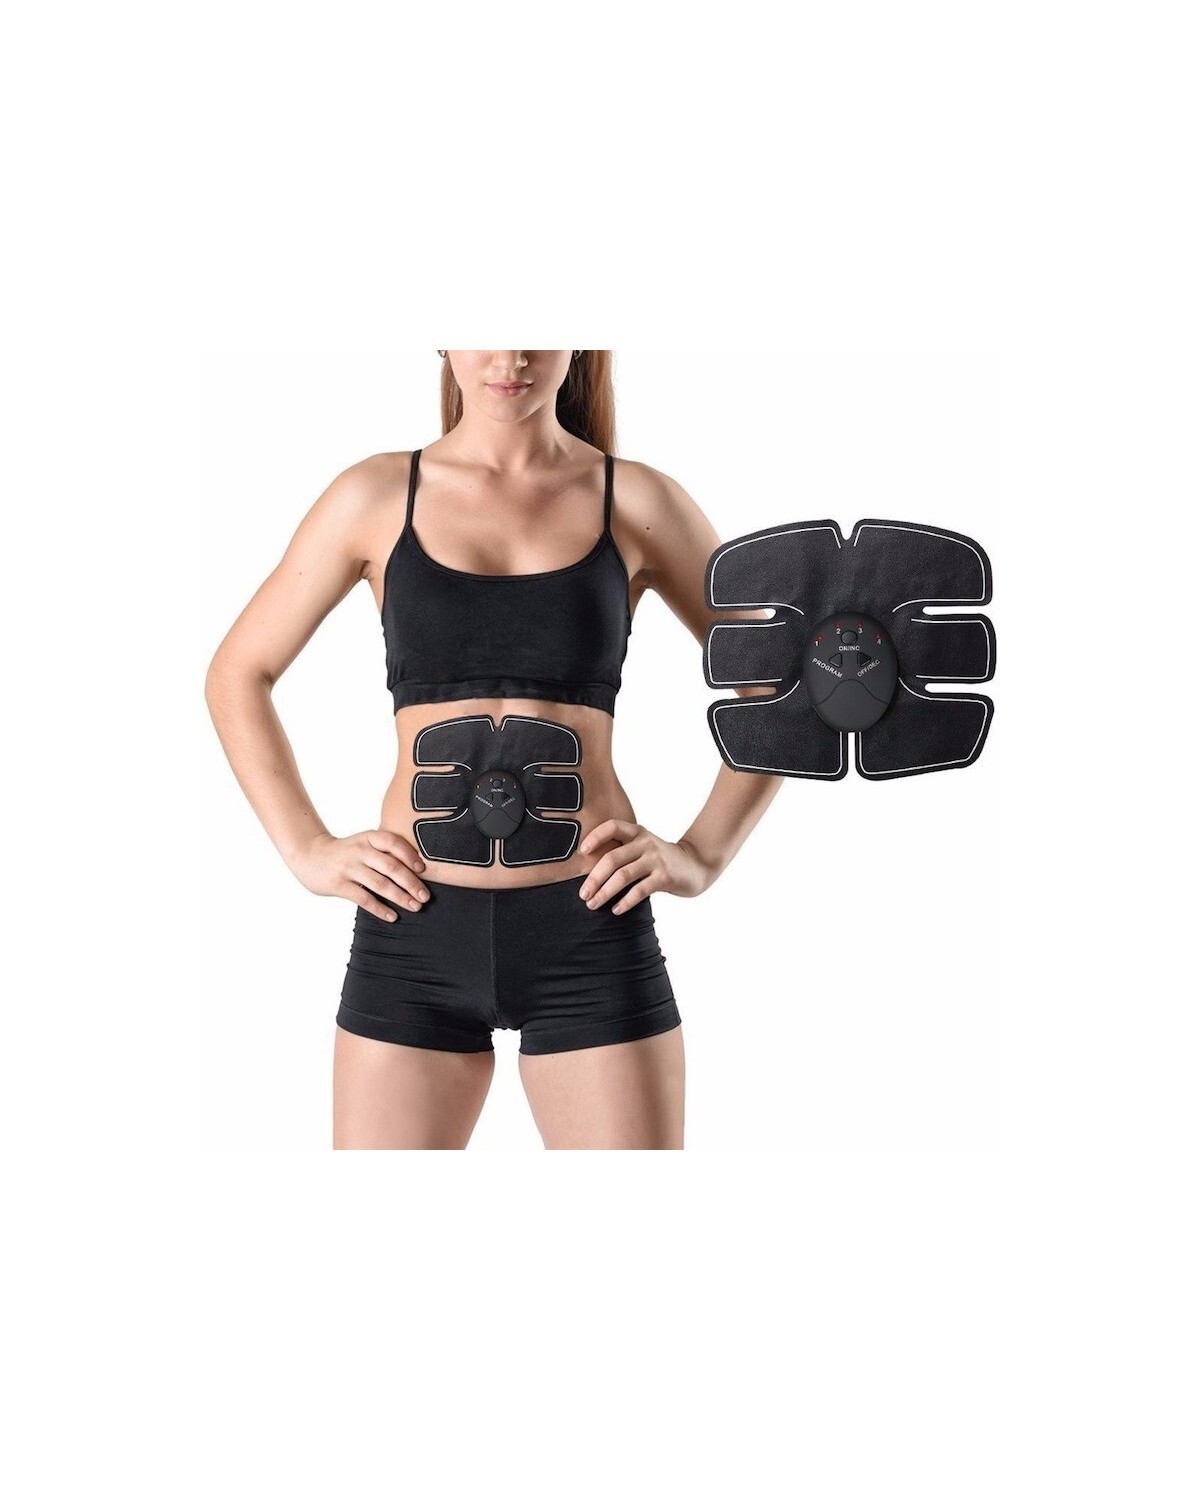 Electroestimulador muscular ondas ems abdomen six pack — Electroventas